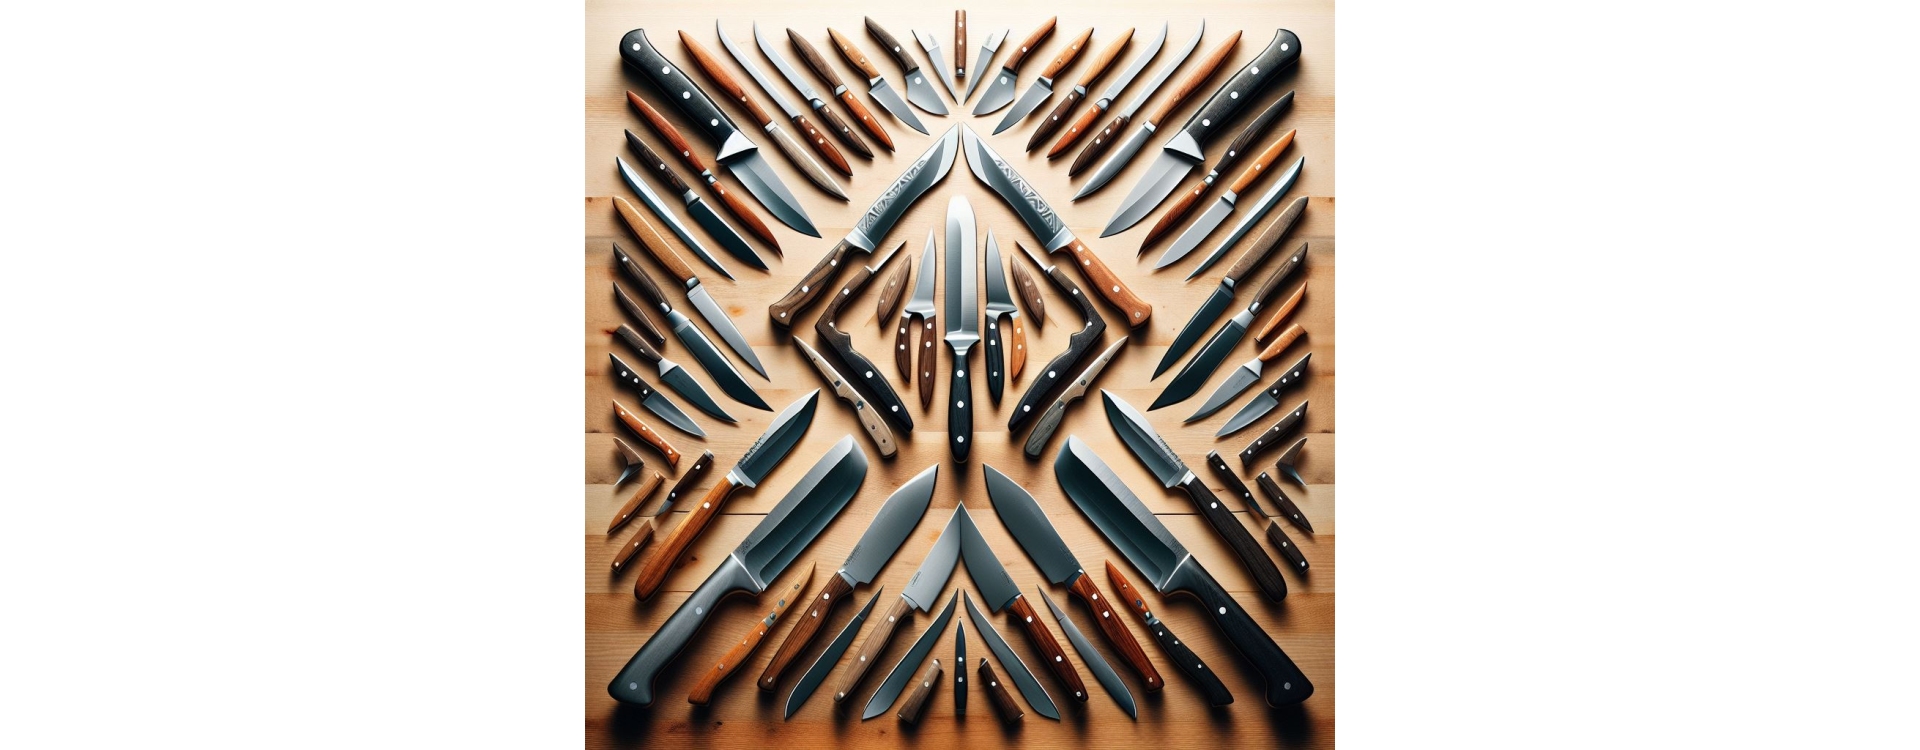 Les Différents Profils de Lame de Couteau: Usages et Caractéristiques